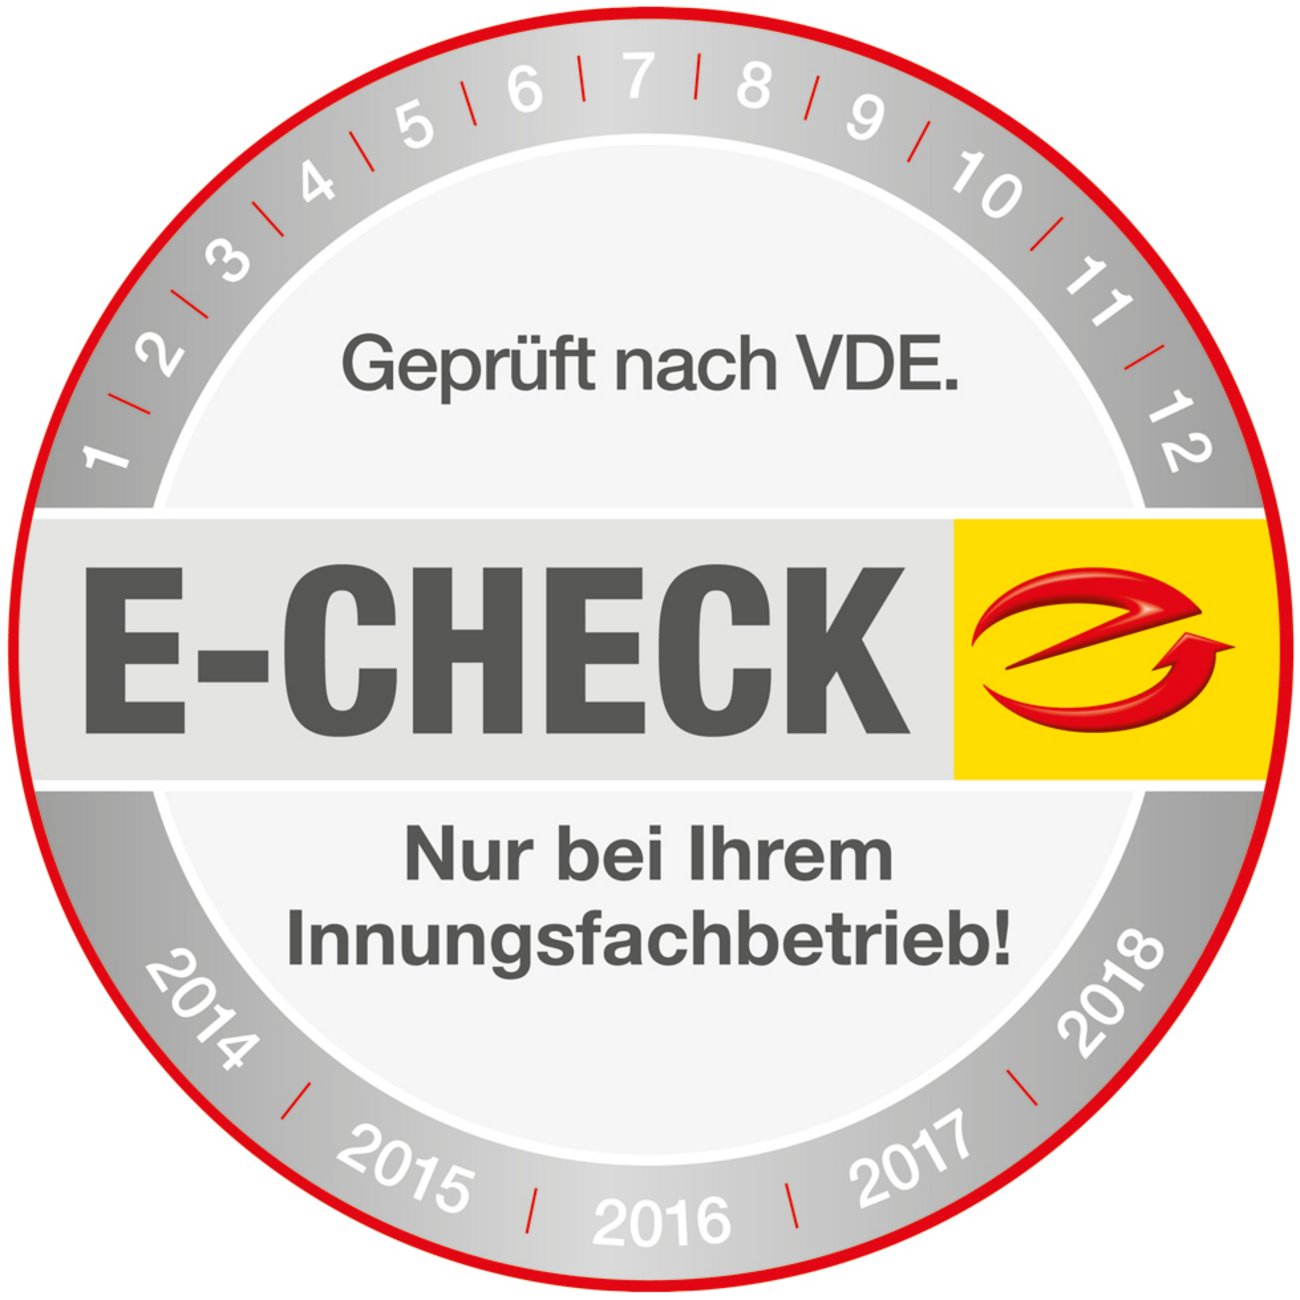 Der E-Check bei Elektro Reinhard GmbH in Mannheim